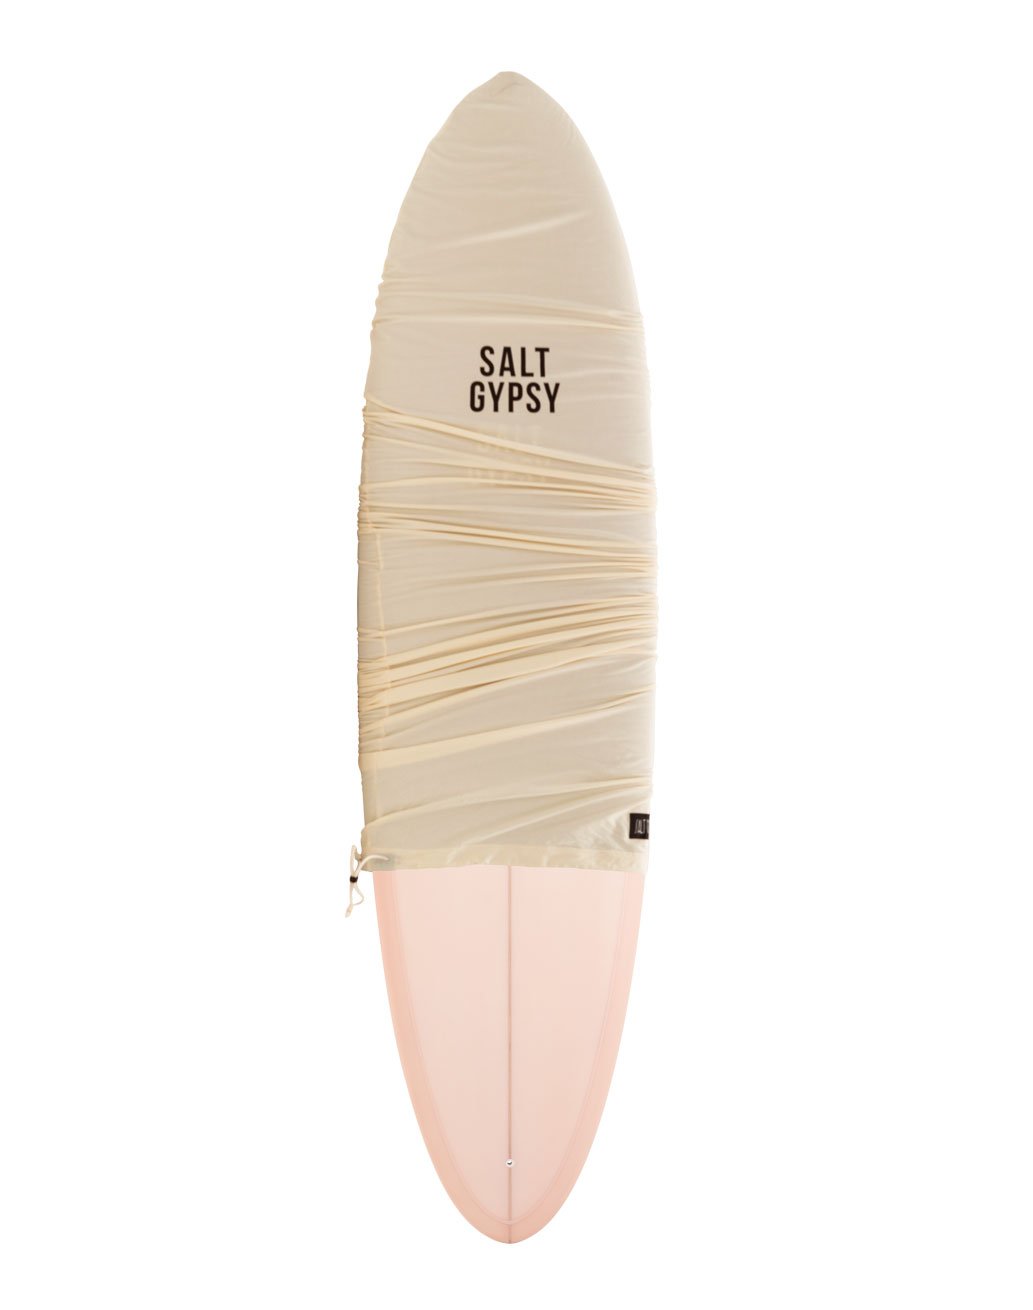 SALT GYPSY MID TIDE SURFBOARD 6'8"